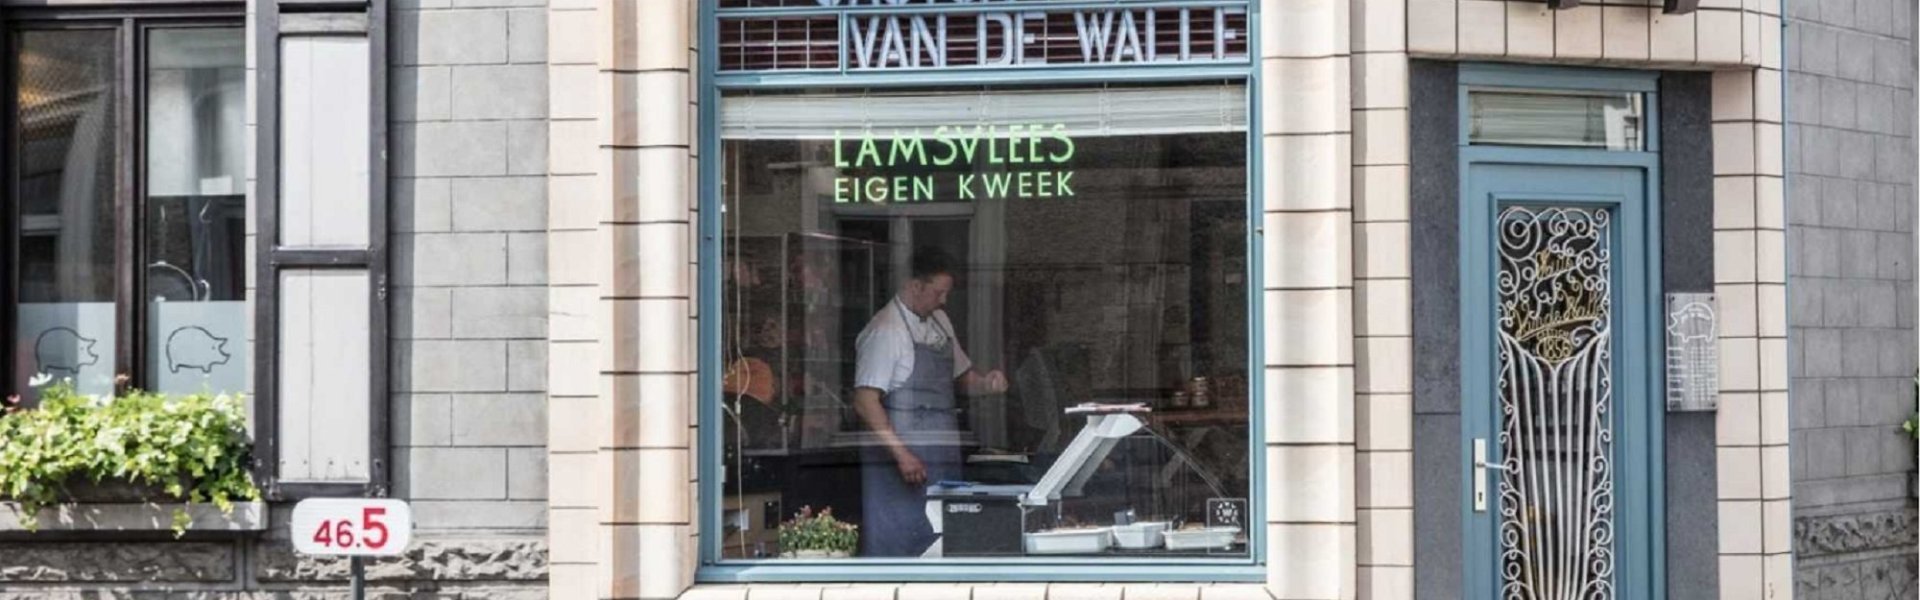 Slagerij Vande Walle - Lamsvlees